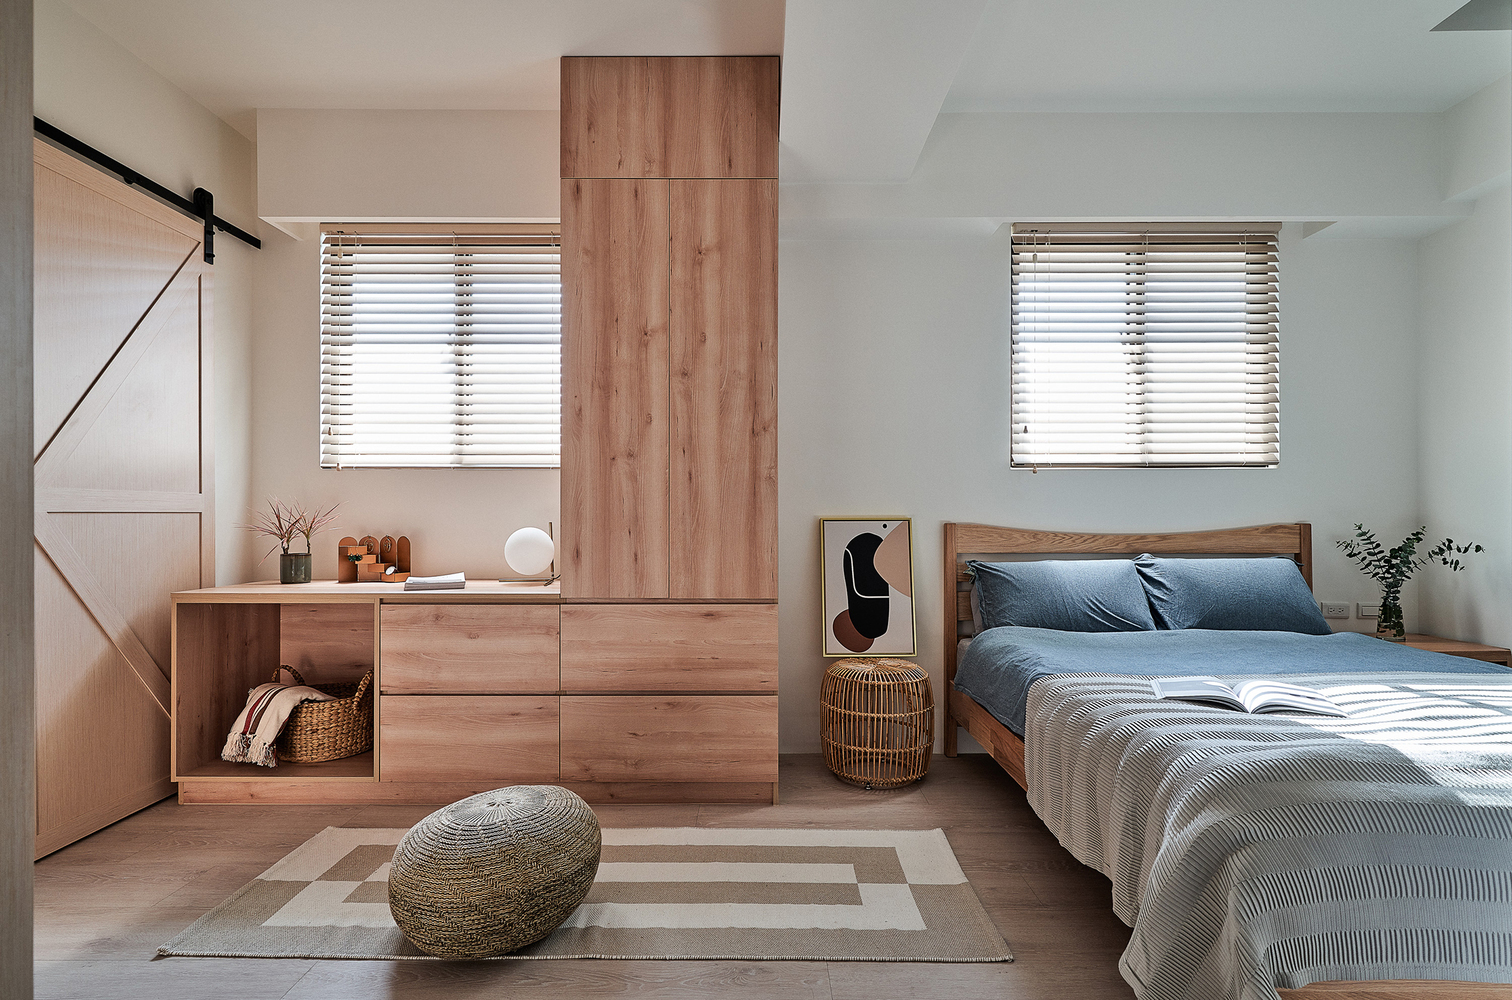 Hình ảnh phòng ngủ với giường đôi nệm trắng, hai khung cửa sổ kính lấy sáng, tủ gỗ mộc mạc